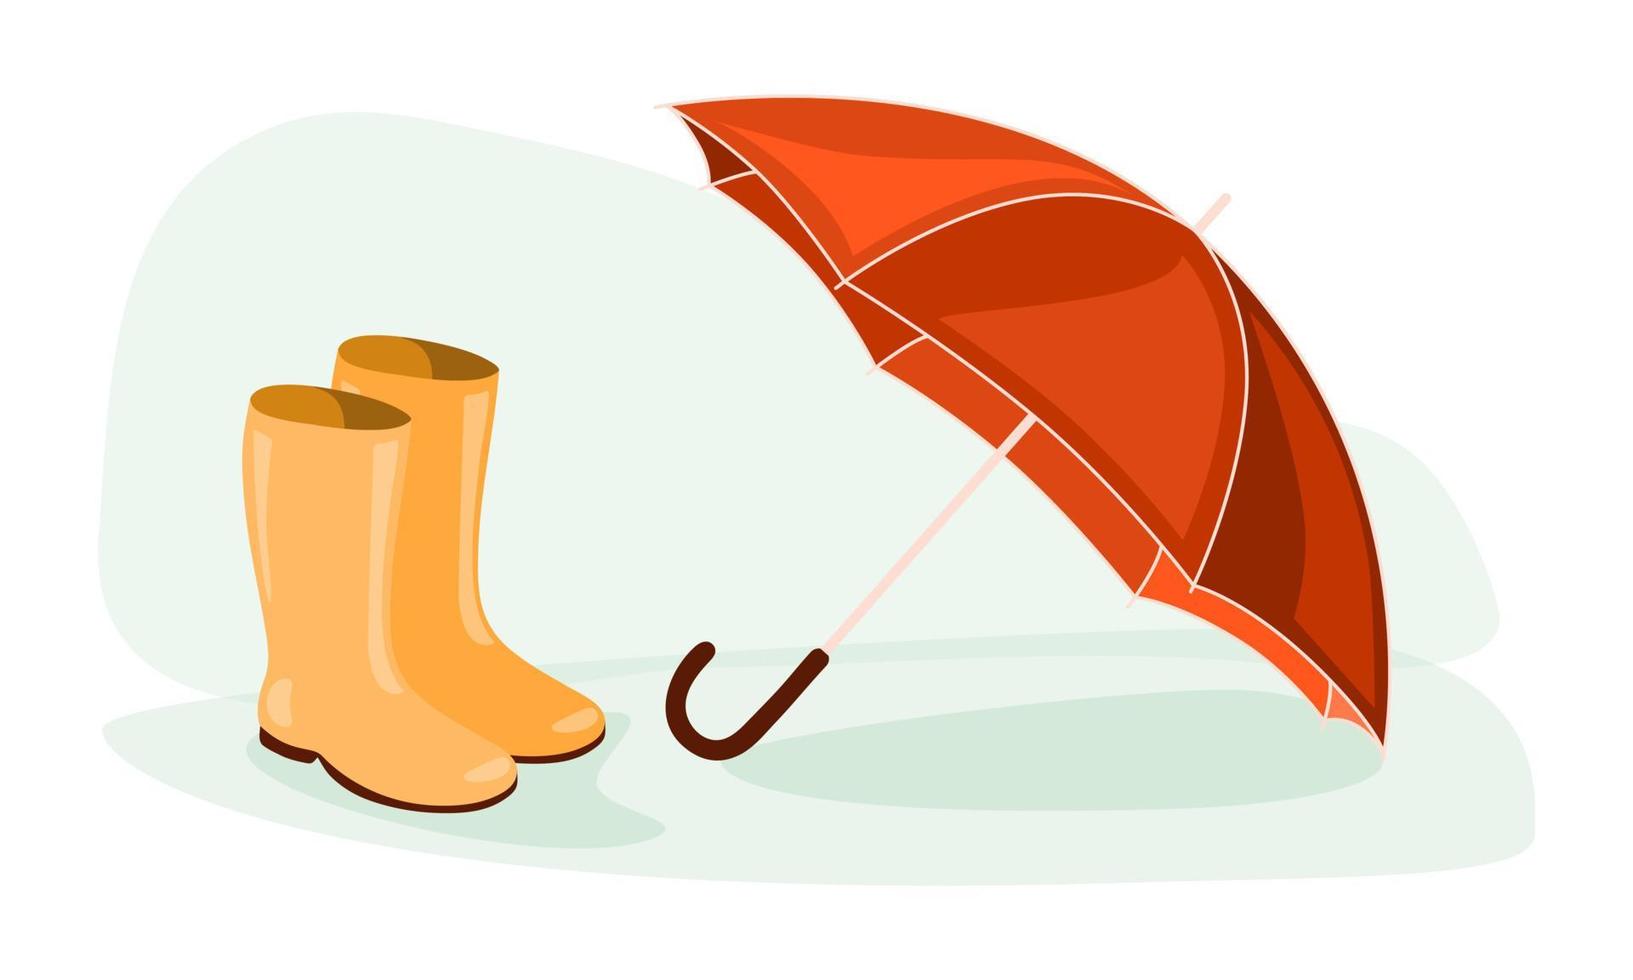 leuchtend orange - roter Regenschirm auf Pfütze. isolierte Clipart-Elemente auf weißem Hintergrund. handgezeichnete illustration für dekoration, scrapbooking, textilien, tapeten, grußkartendesign. vektor